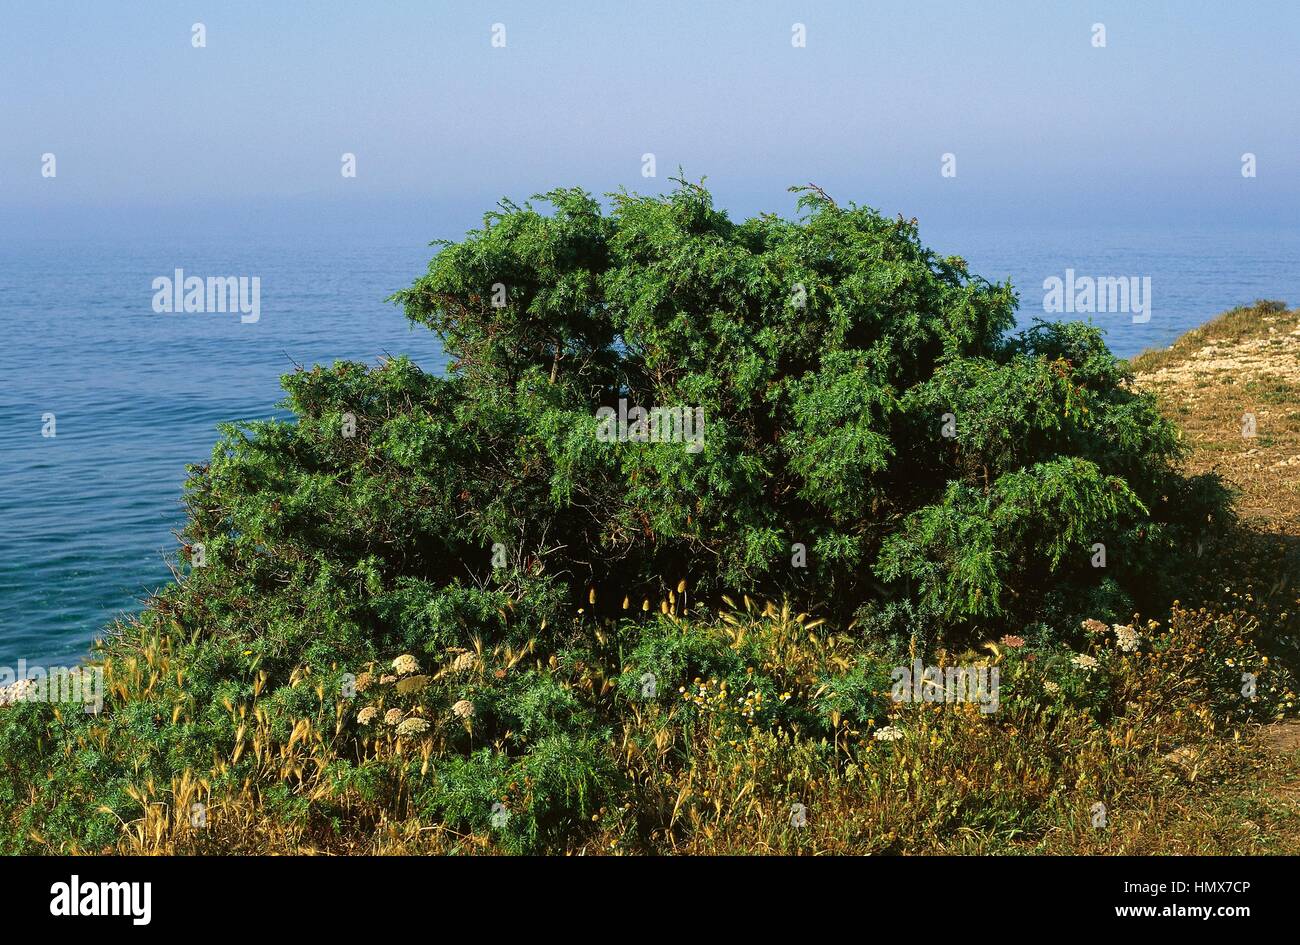 Juniper (Juniperus sp), Cupressaceae, cape Mannu, Sinis peninsula, Sardinia, Italy. Stock Photo